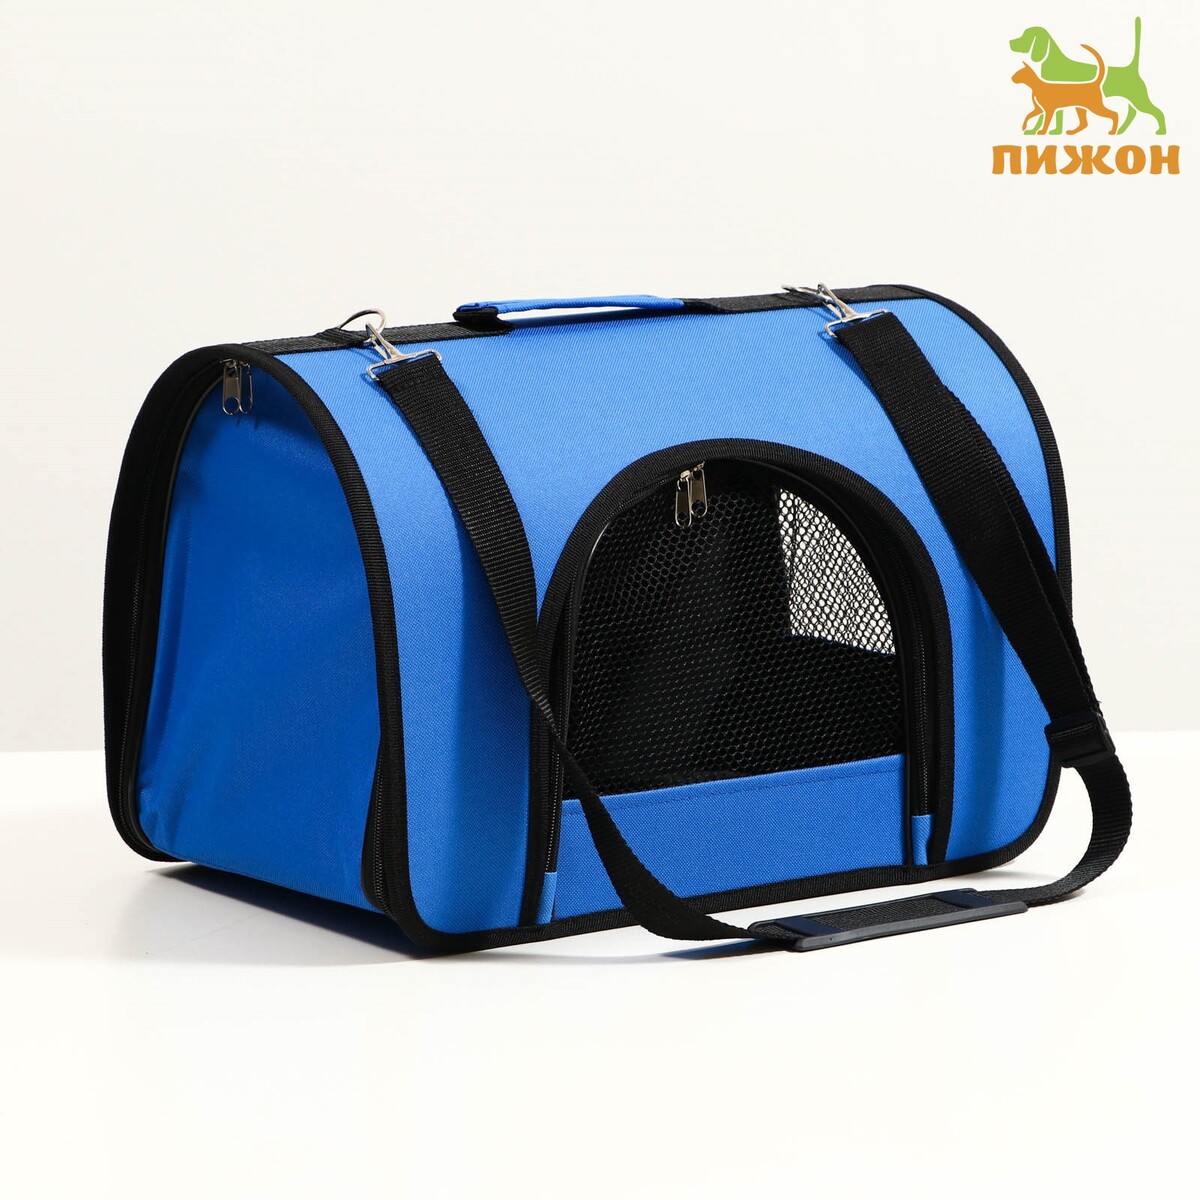 Сумка - переноска для животных, 2 входа, 40 х 25 х 28 см, синяя сумка переноска для животных искусственная кожа 31 х 20 5 х 22 см